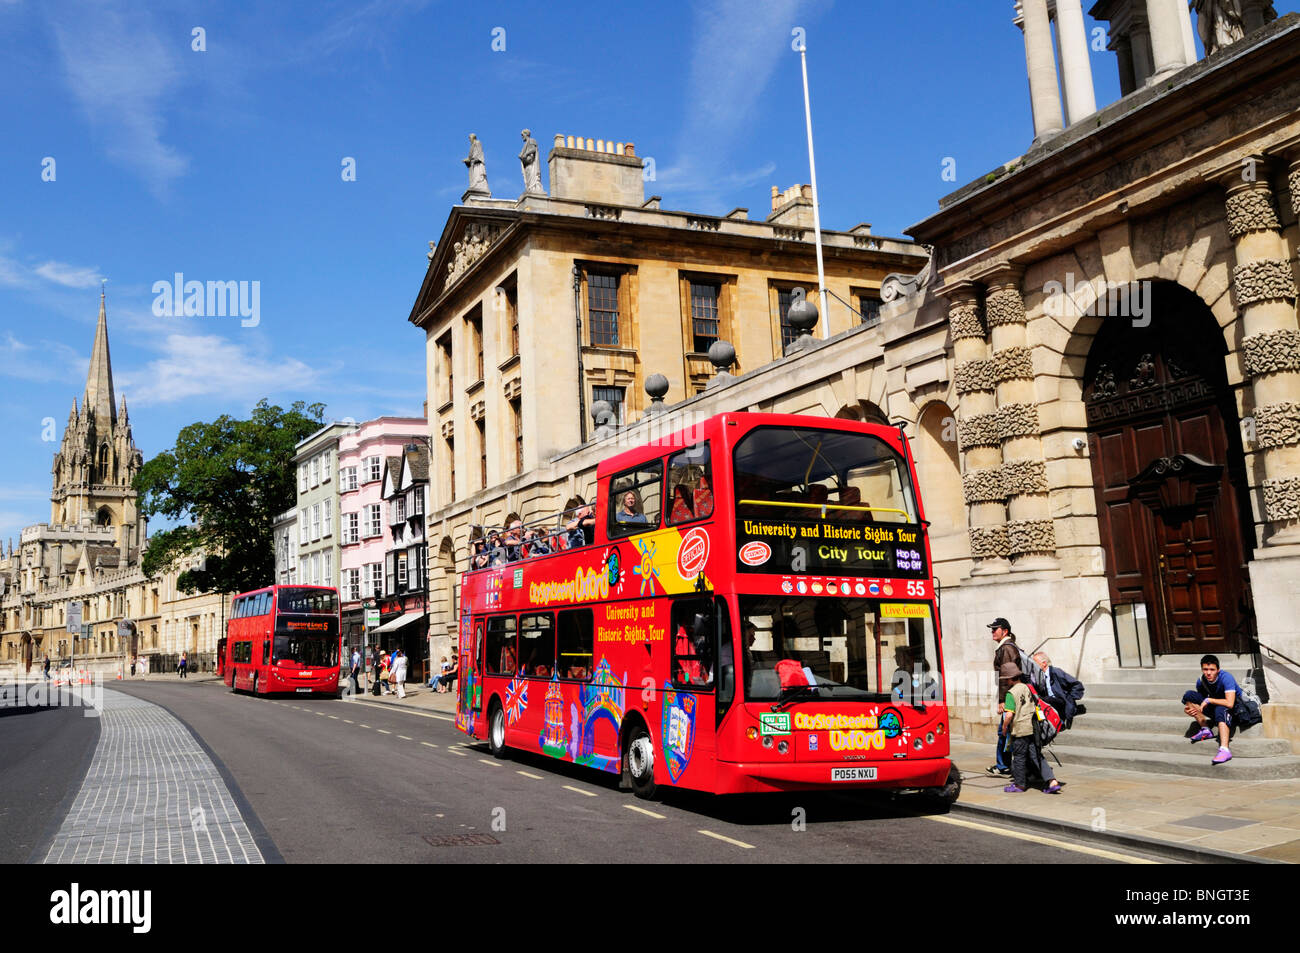 City sightseeing bus touristique à l'extérieur du Queens College, Oxford, England, UK Banque D'Images